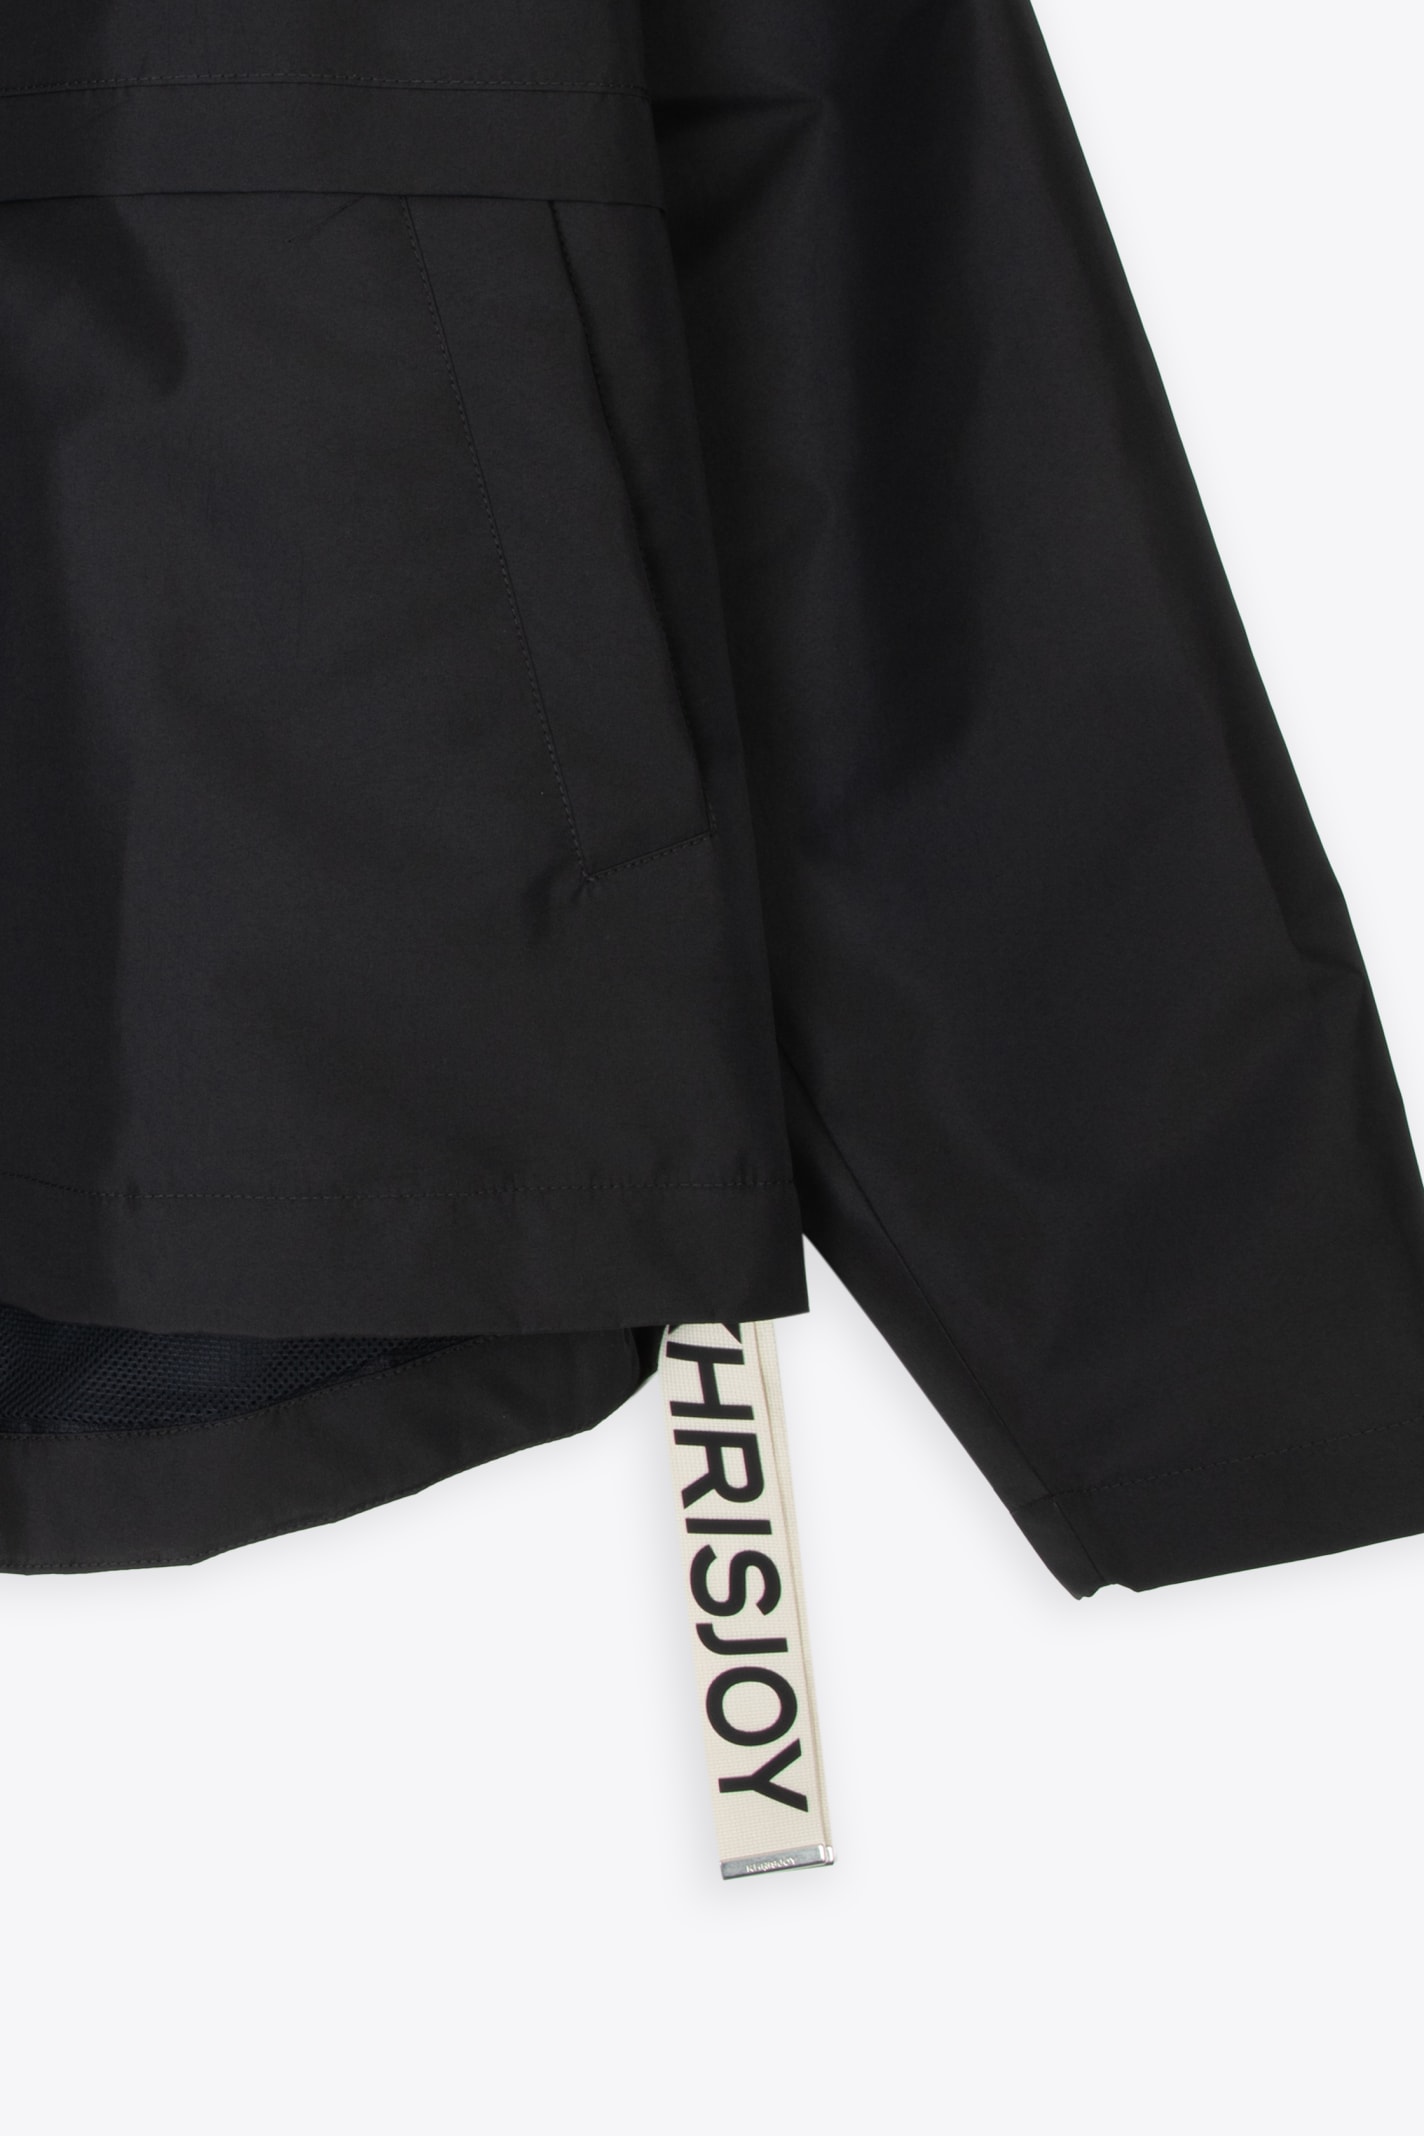 Shop Khrisjoy Shell Windbreaker Black Nylon Windproof Hooded Jacket - Shell Windbreaker